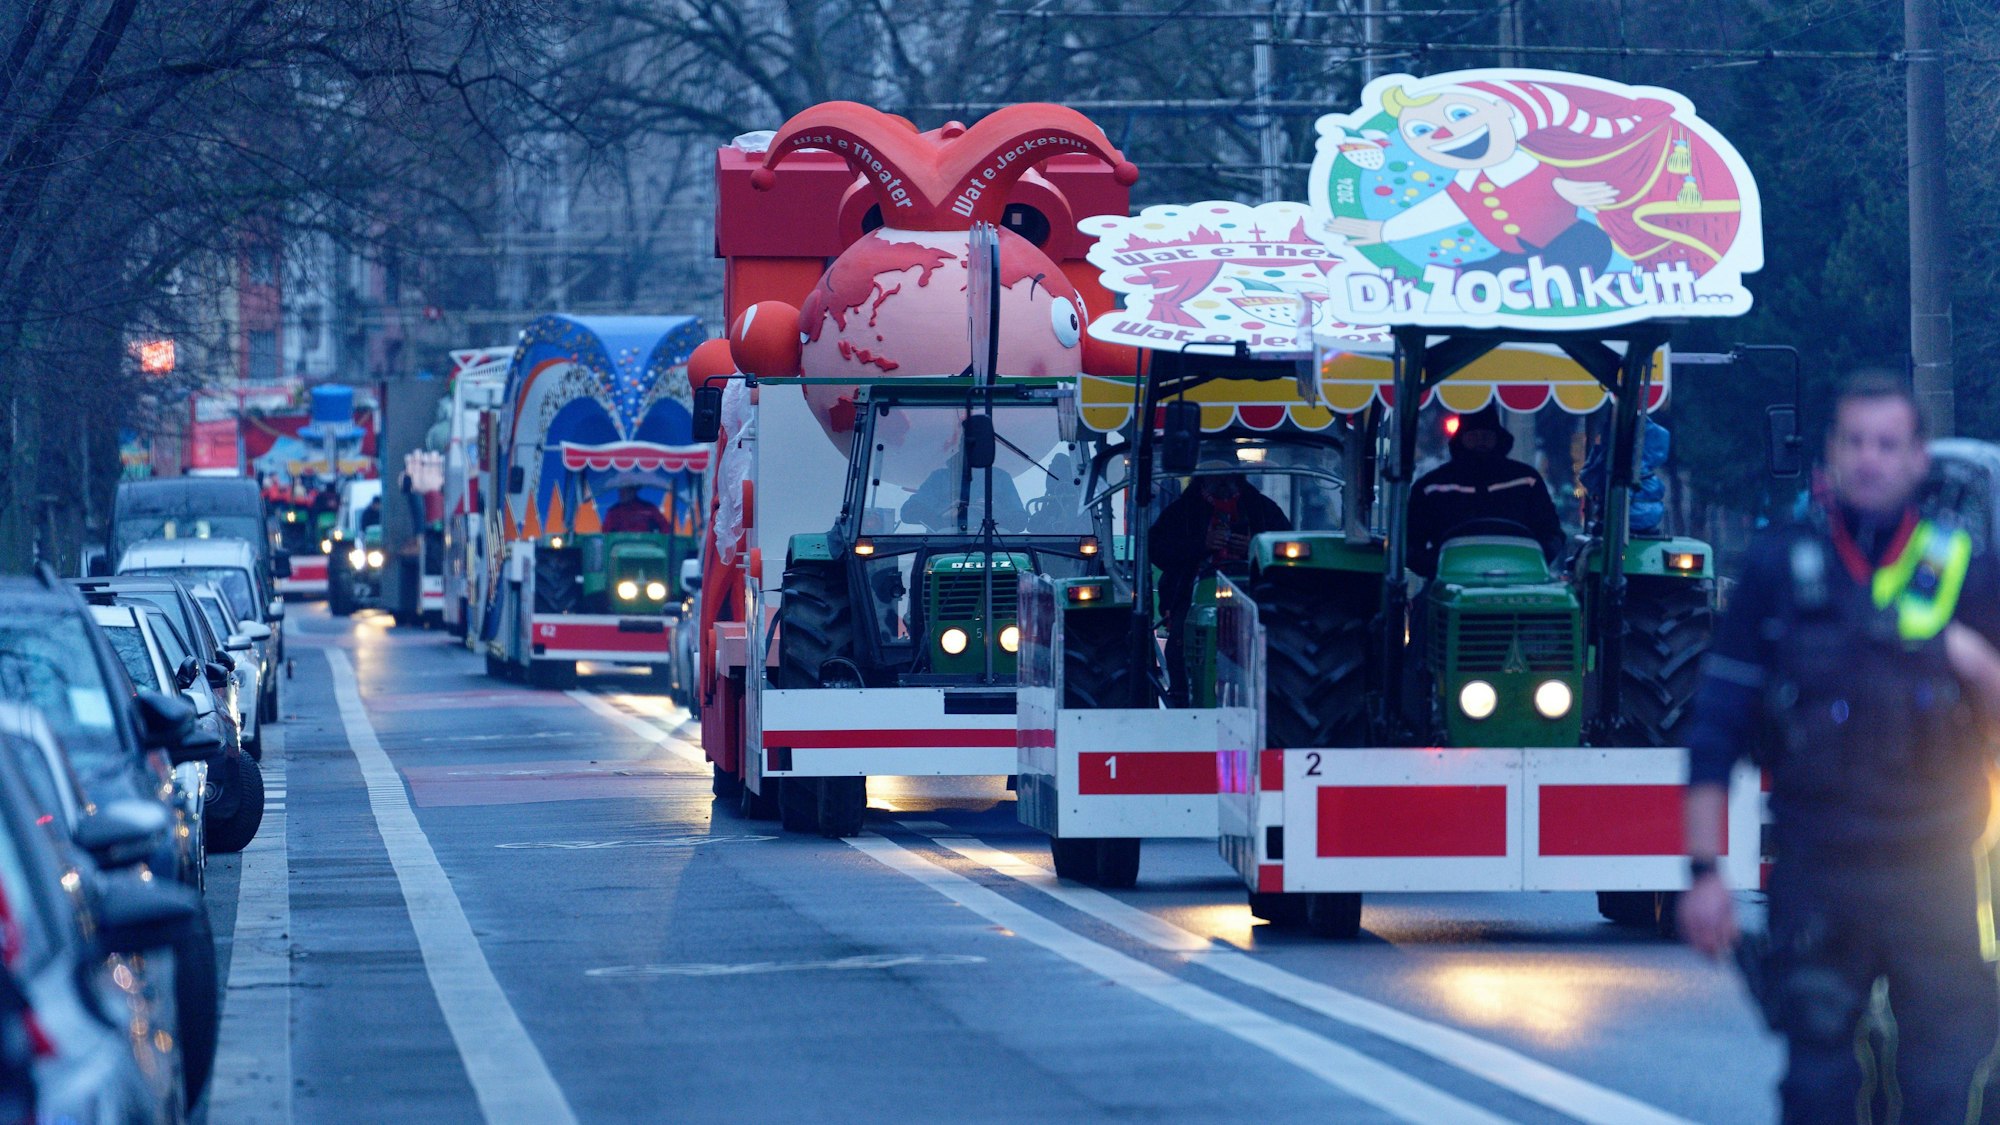 Die ersten Karnevalswagen fahren am frühen Morgen vor dem Rosenmontagszug zu ihrem Startpunkt.